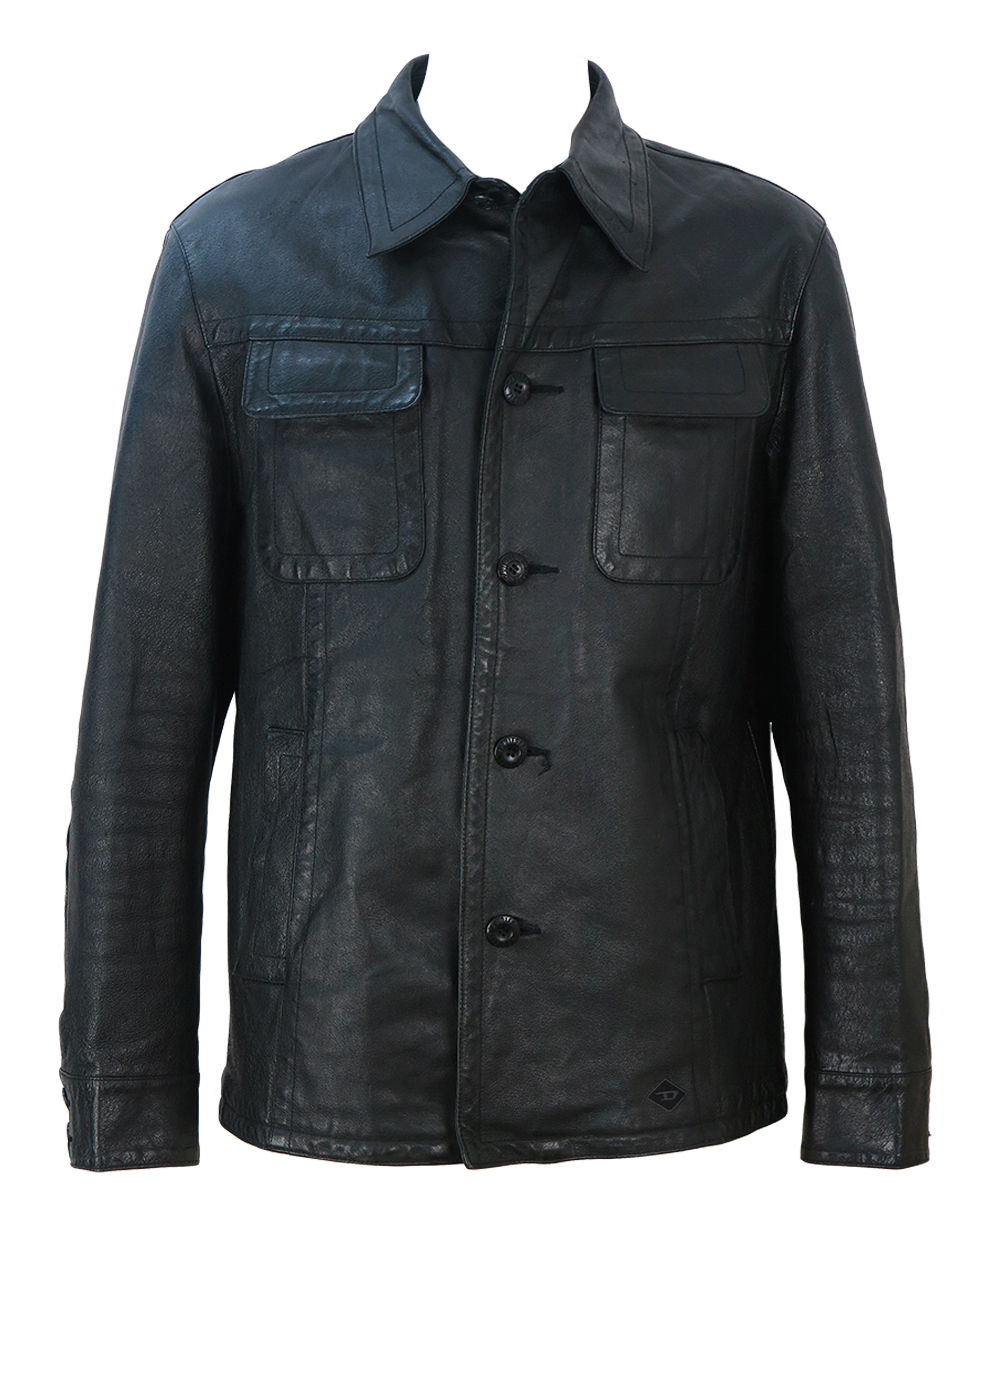 Diesel Black Leather Jacket - M/L | Reign Vintage